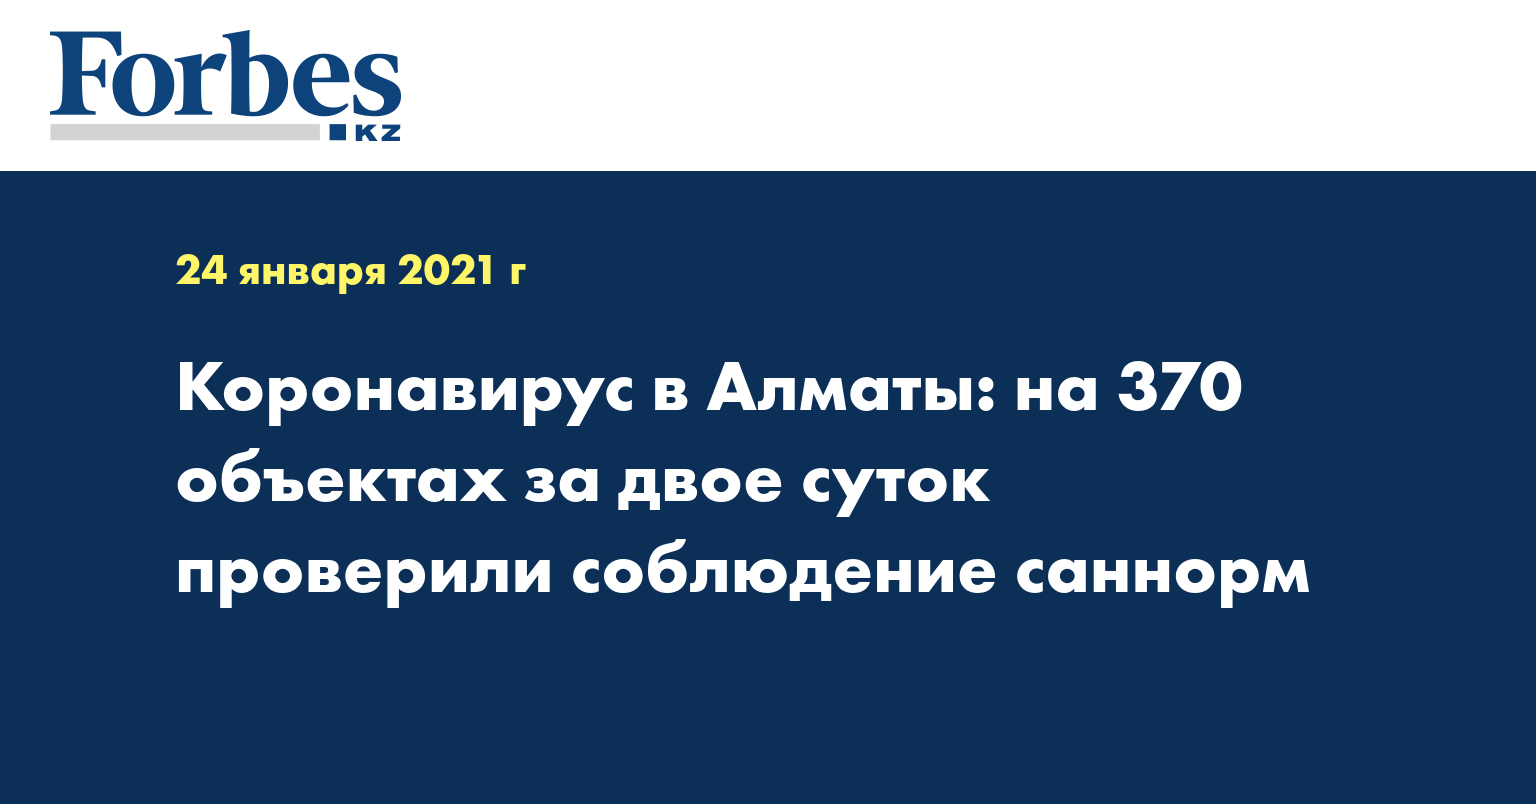 Коронавирус в Алматы: на 370 объектах за двое суток проверили соблюдение саннорм